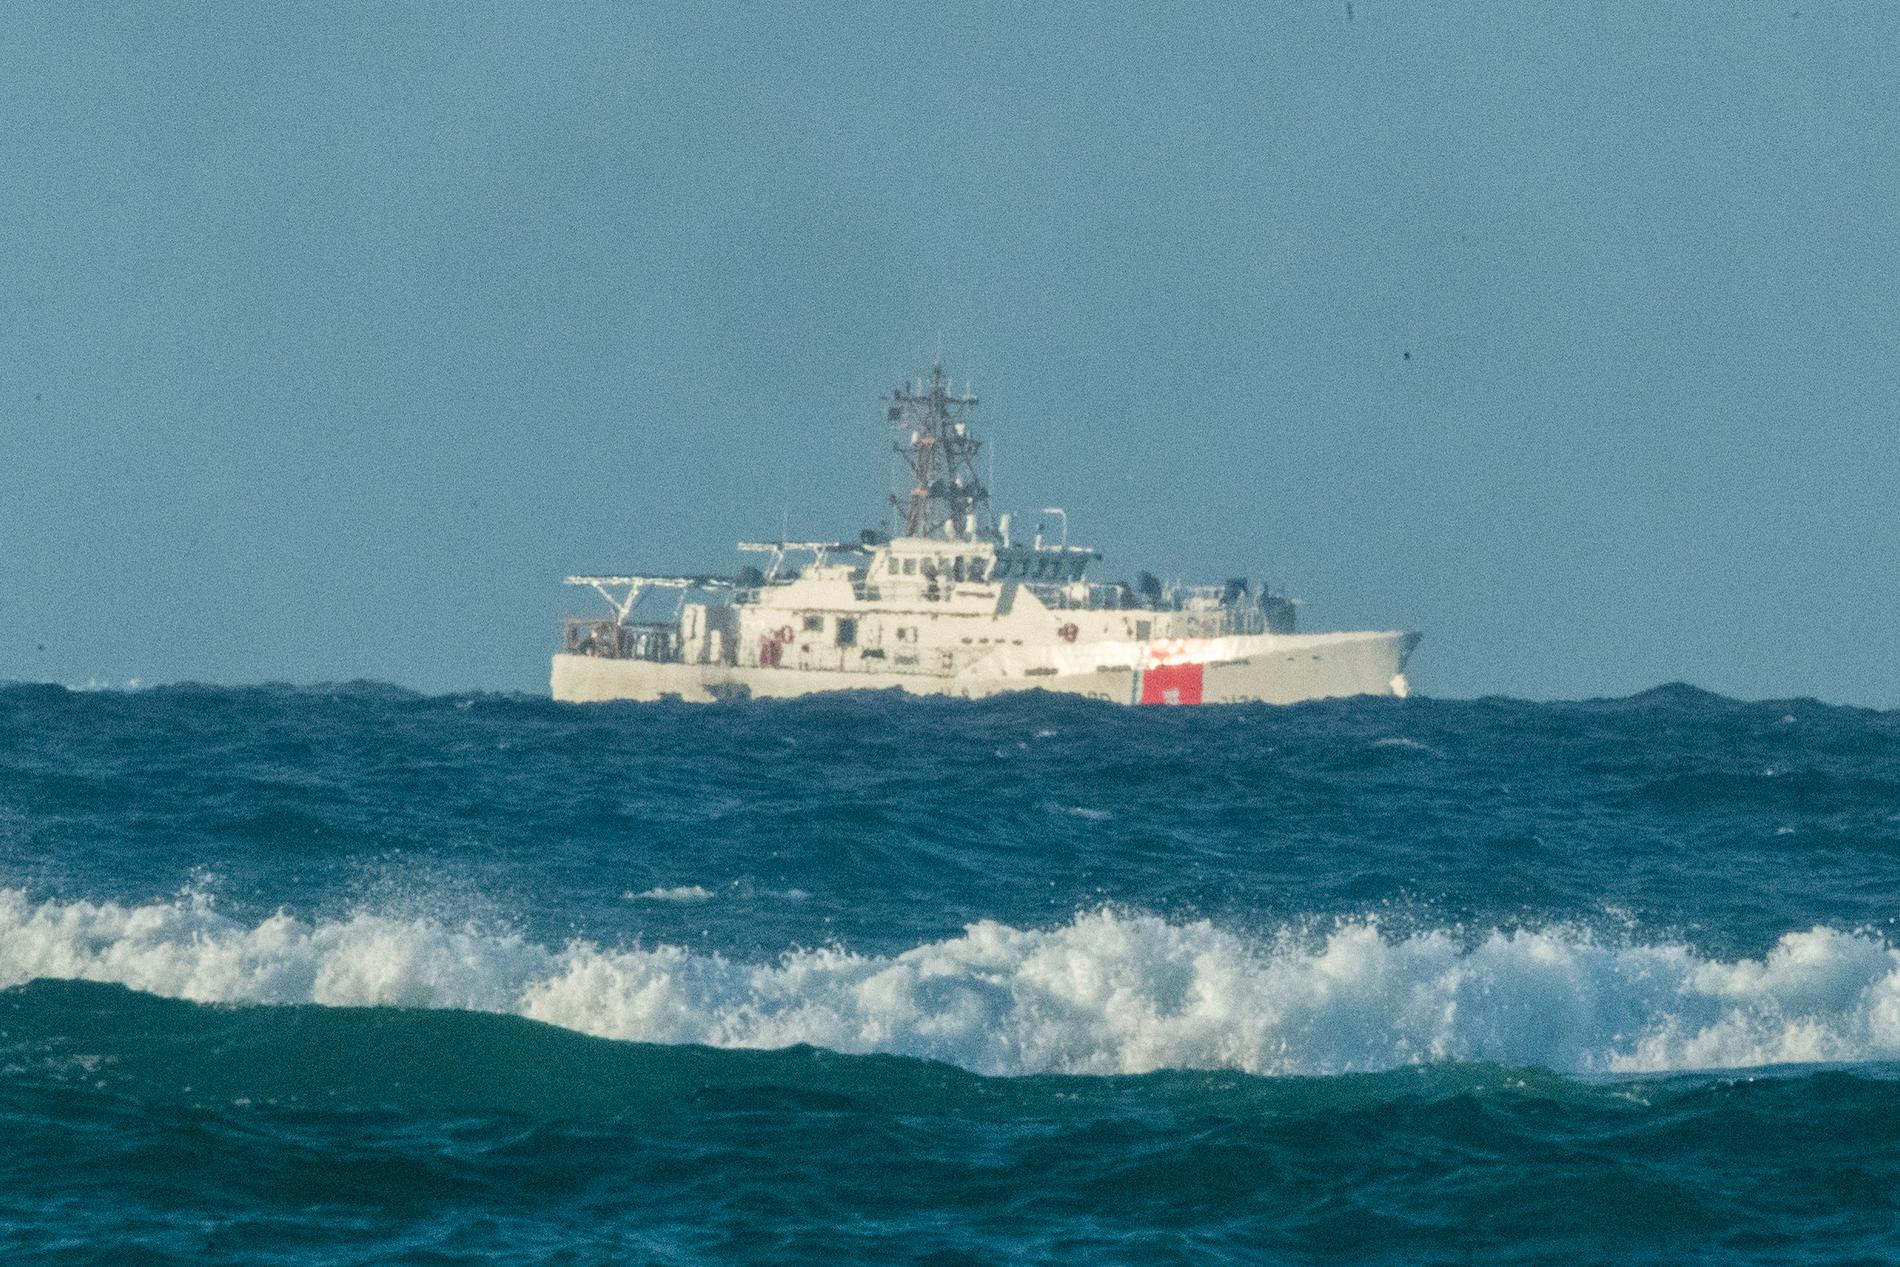 USA:s kustbevakning har skickat ut flera fartyg för att leta efter dem som saknas efter båtolyckan. Arkivbild.